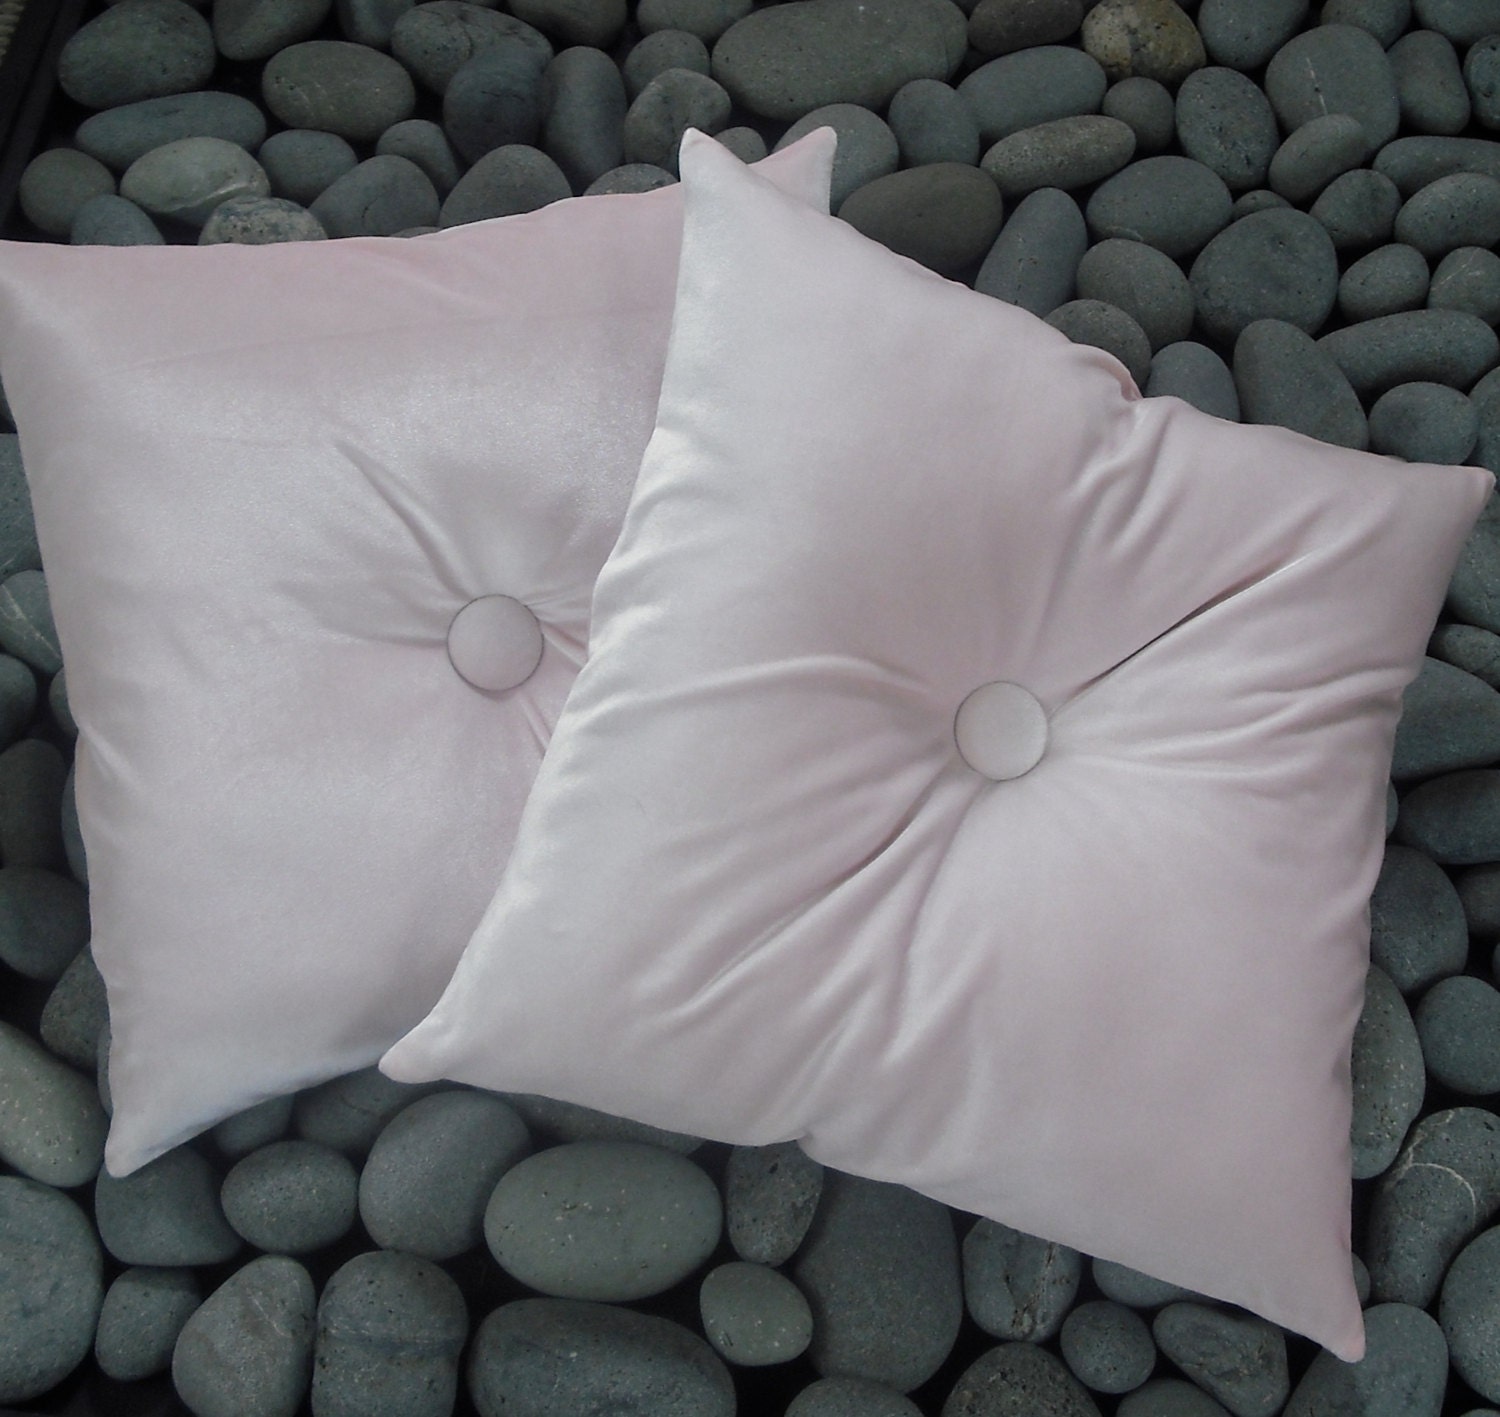 Popular items for pink velvet pillows on Etsy